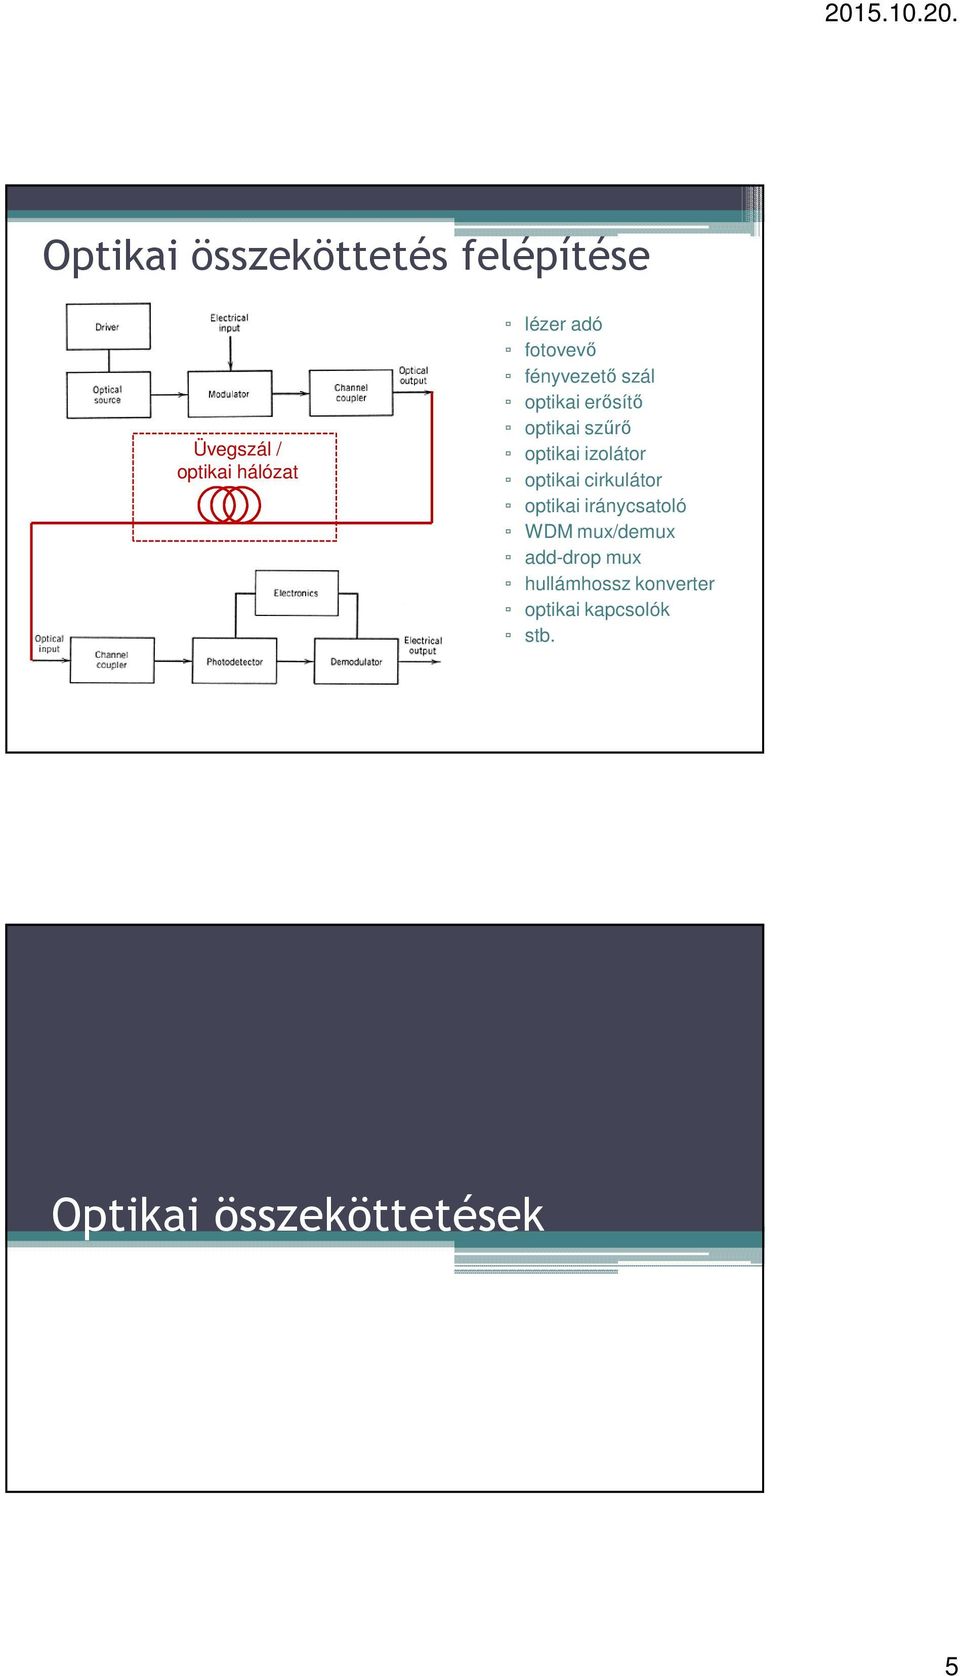 izolátor optikai cirkulátor optikai iránycsatoló WDM mux/demux